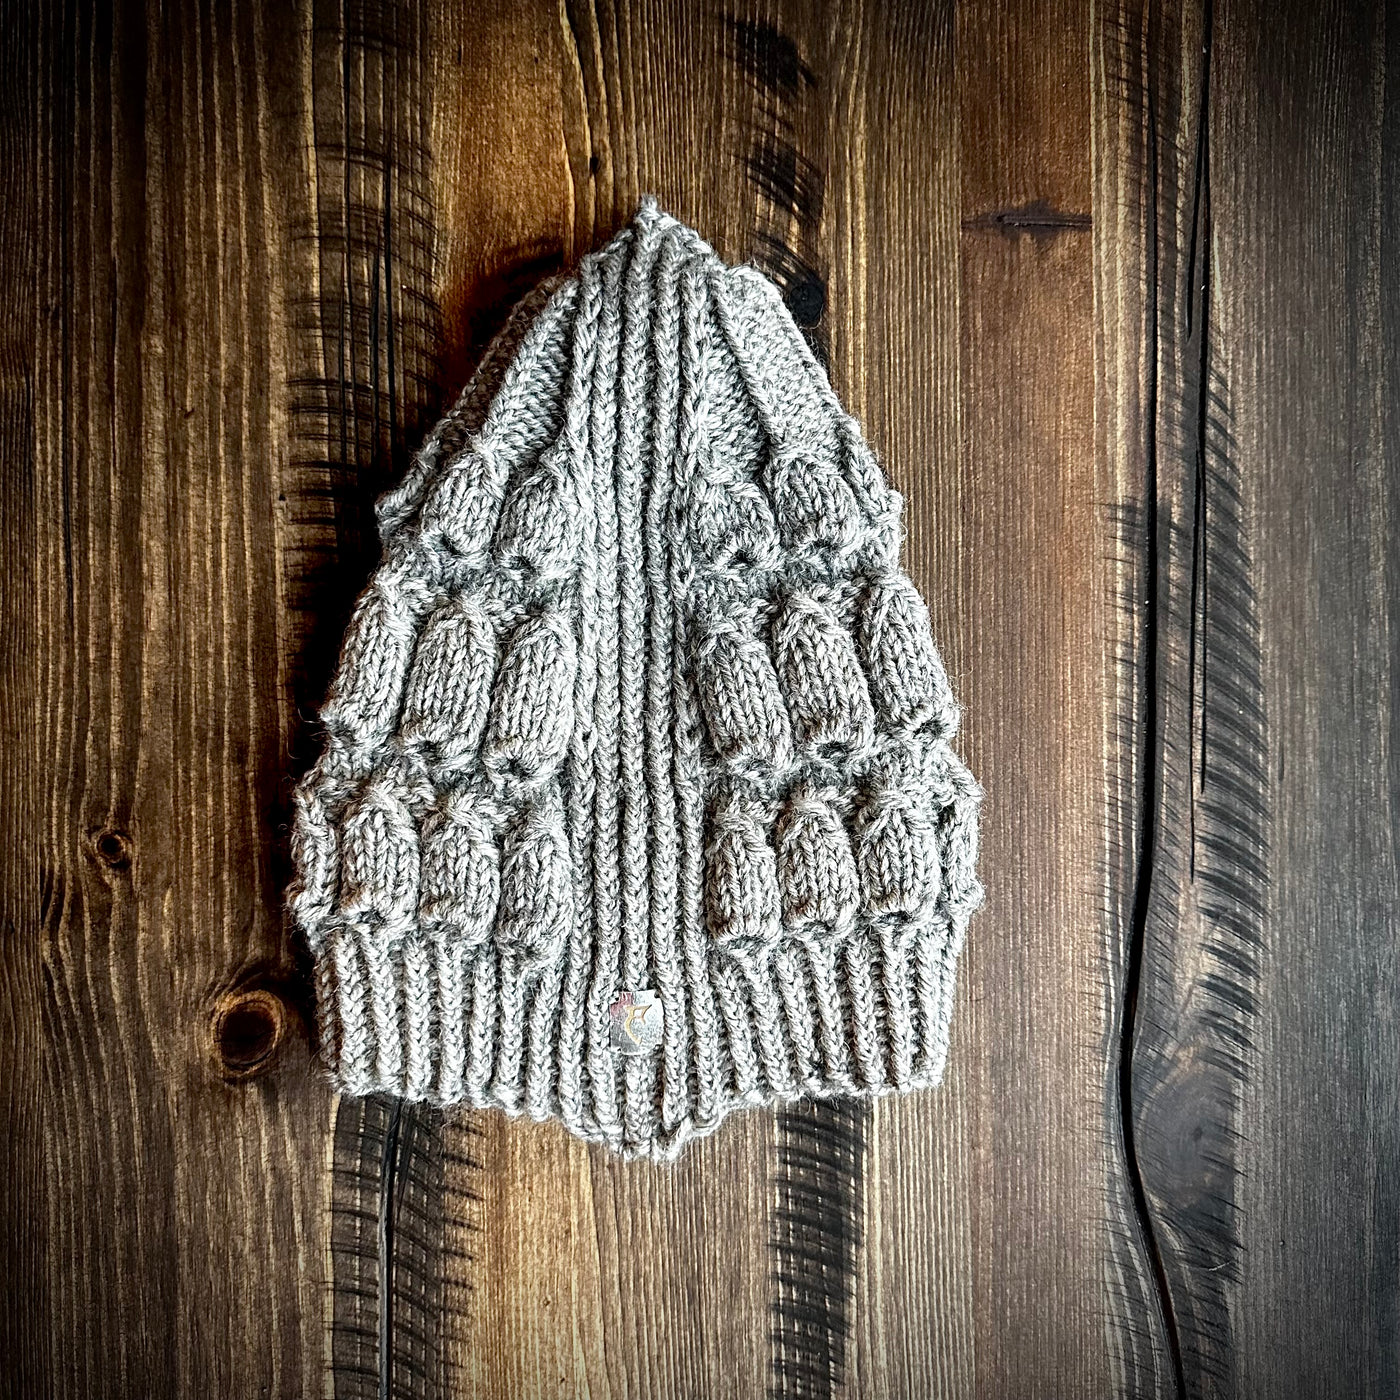 Handmade knitted eden grey kids beanie